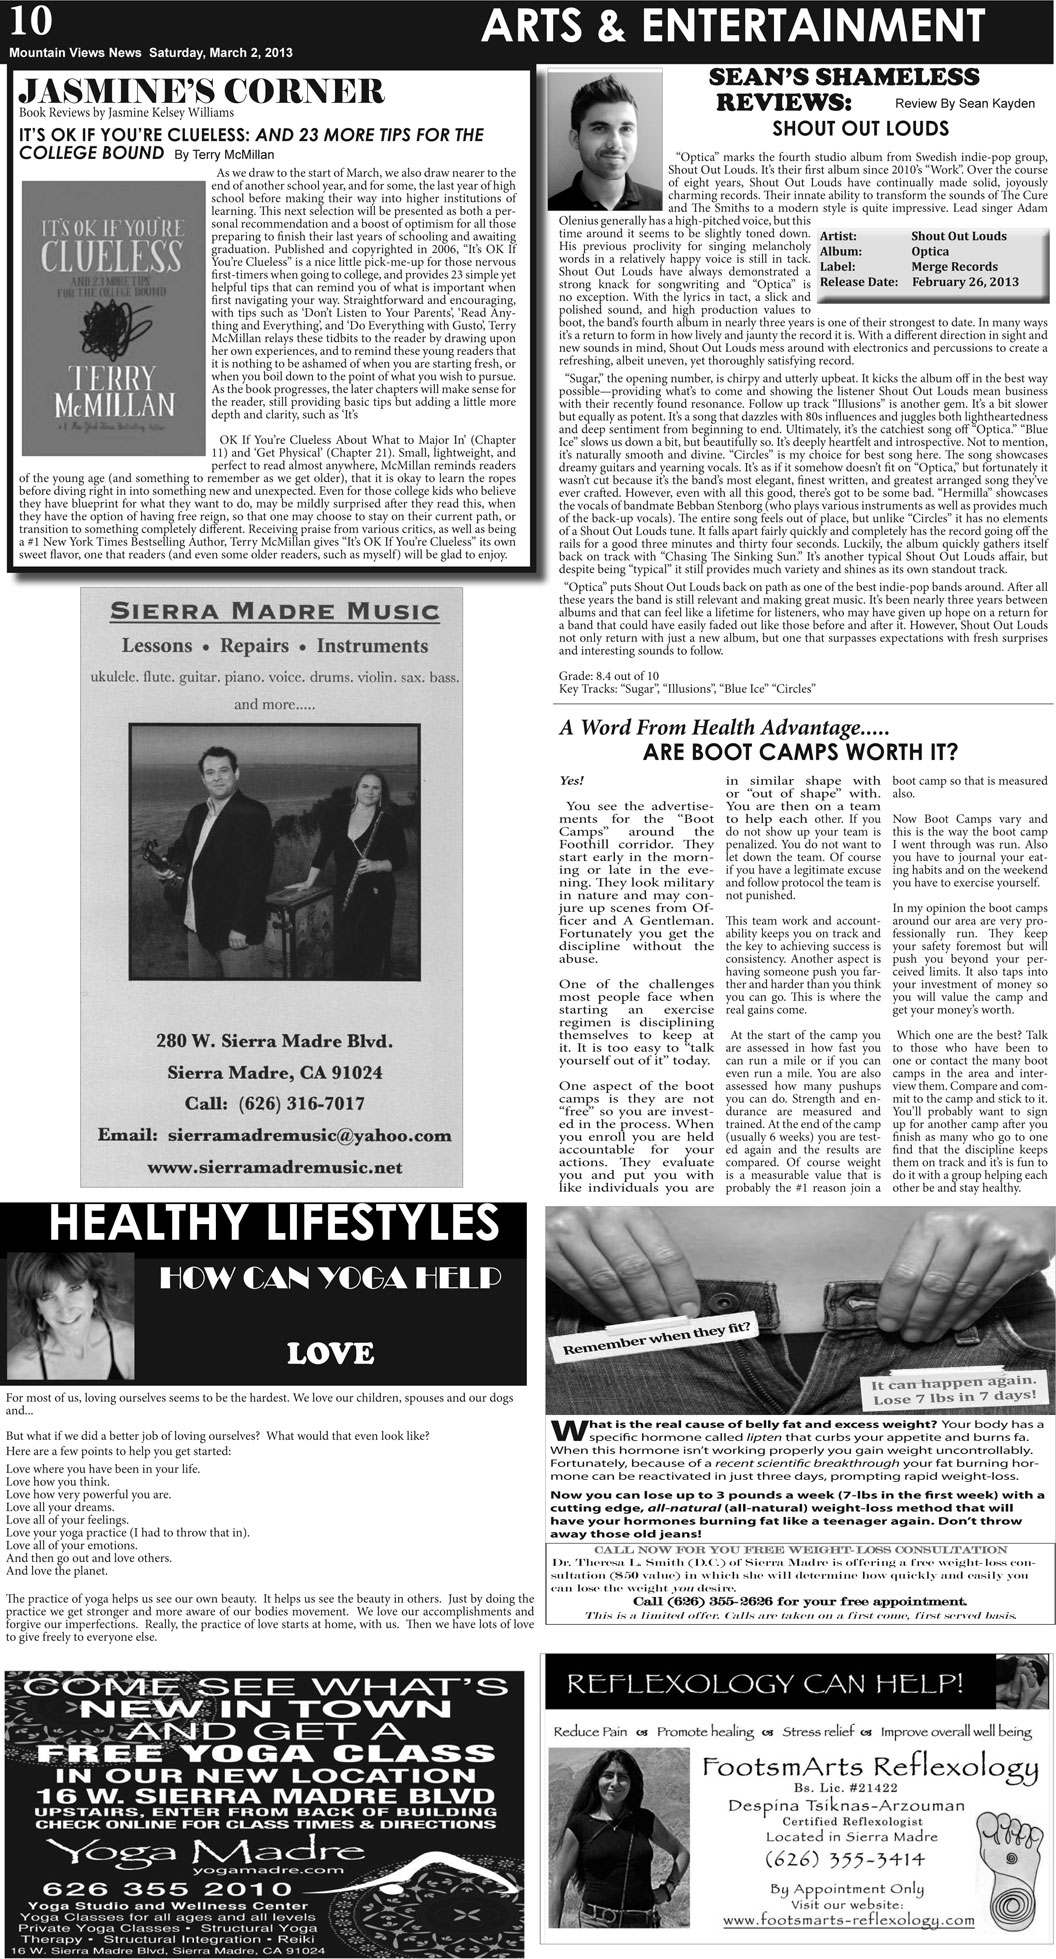 MVNews this week:  Page 10